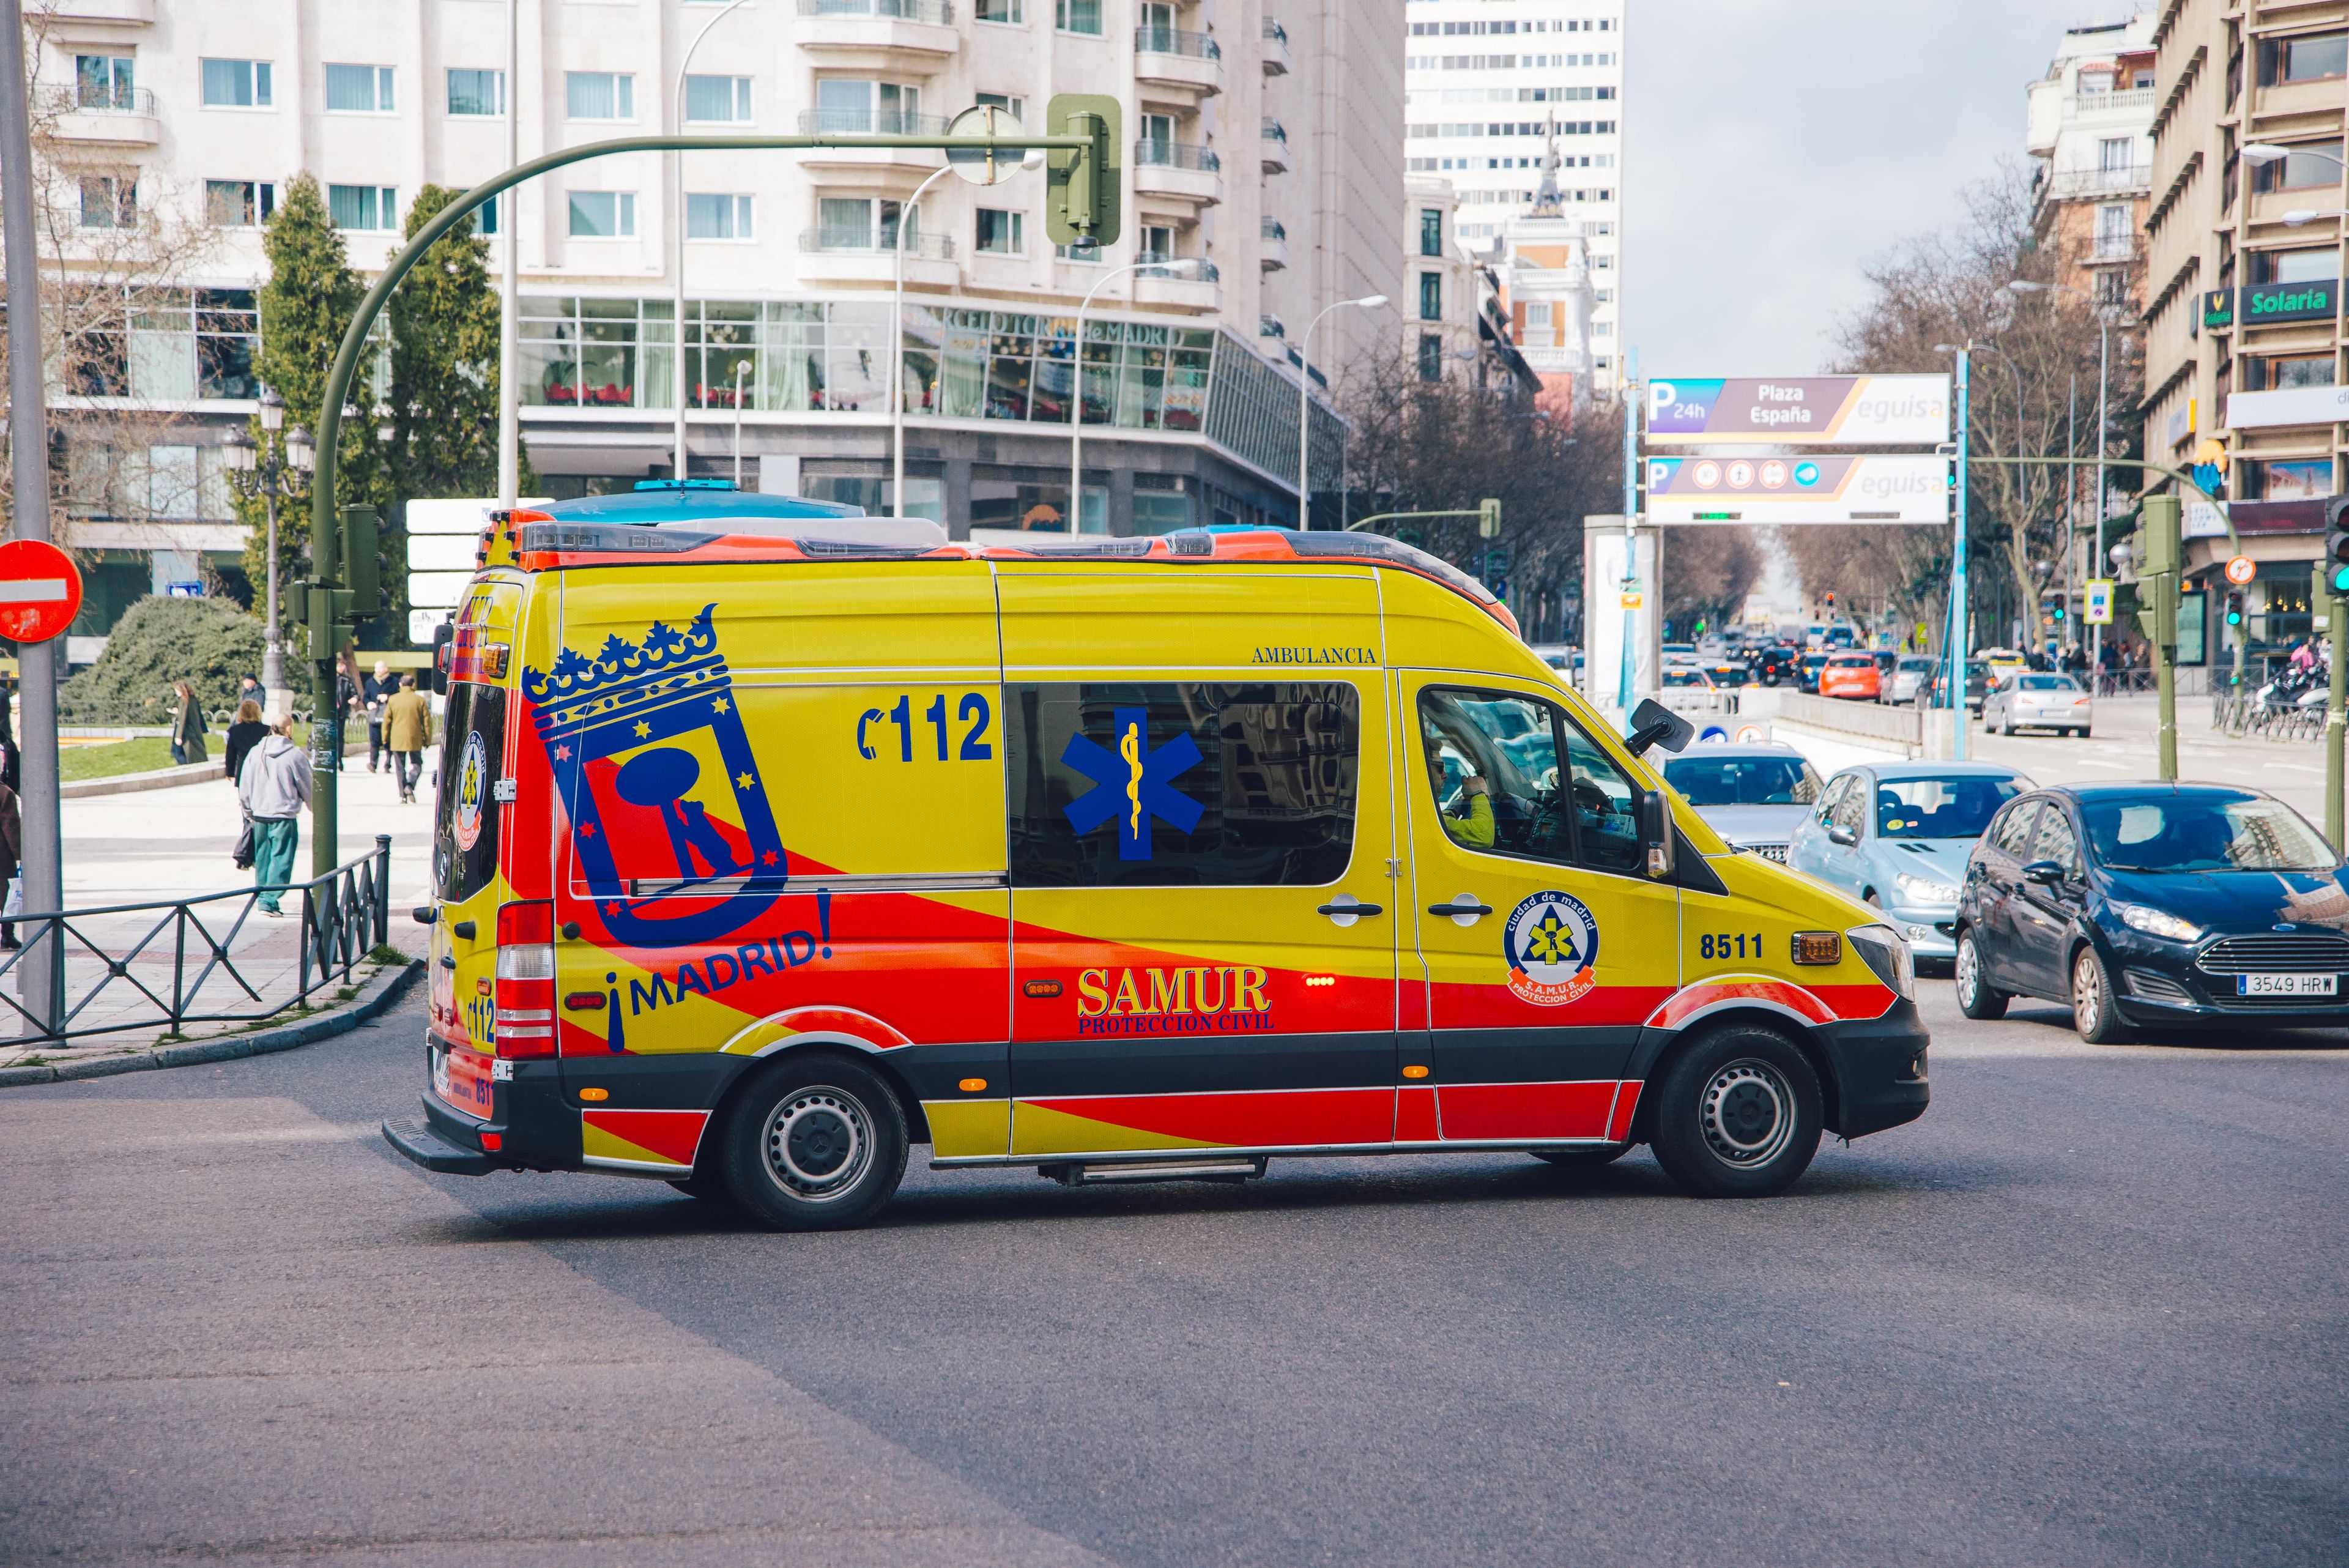 Una ambulancia circulando en Madrid